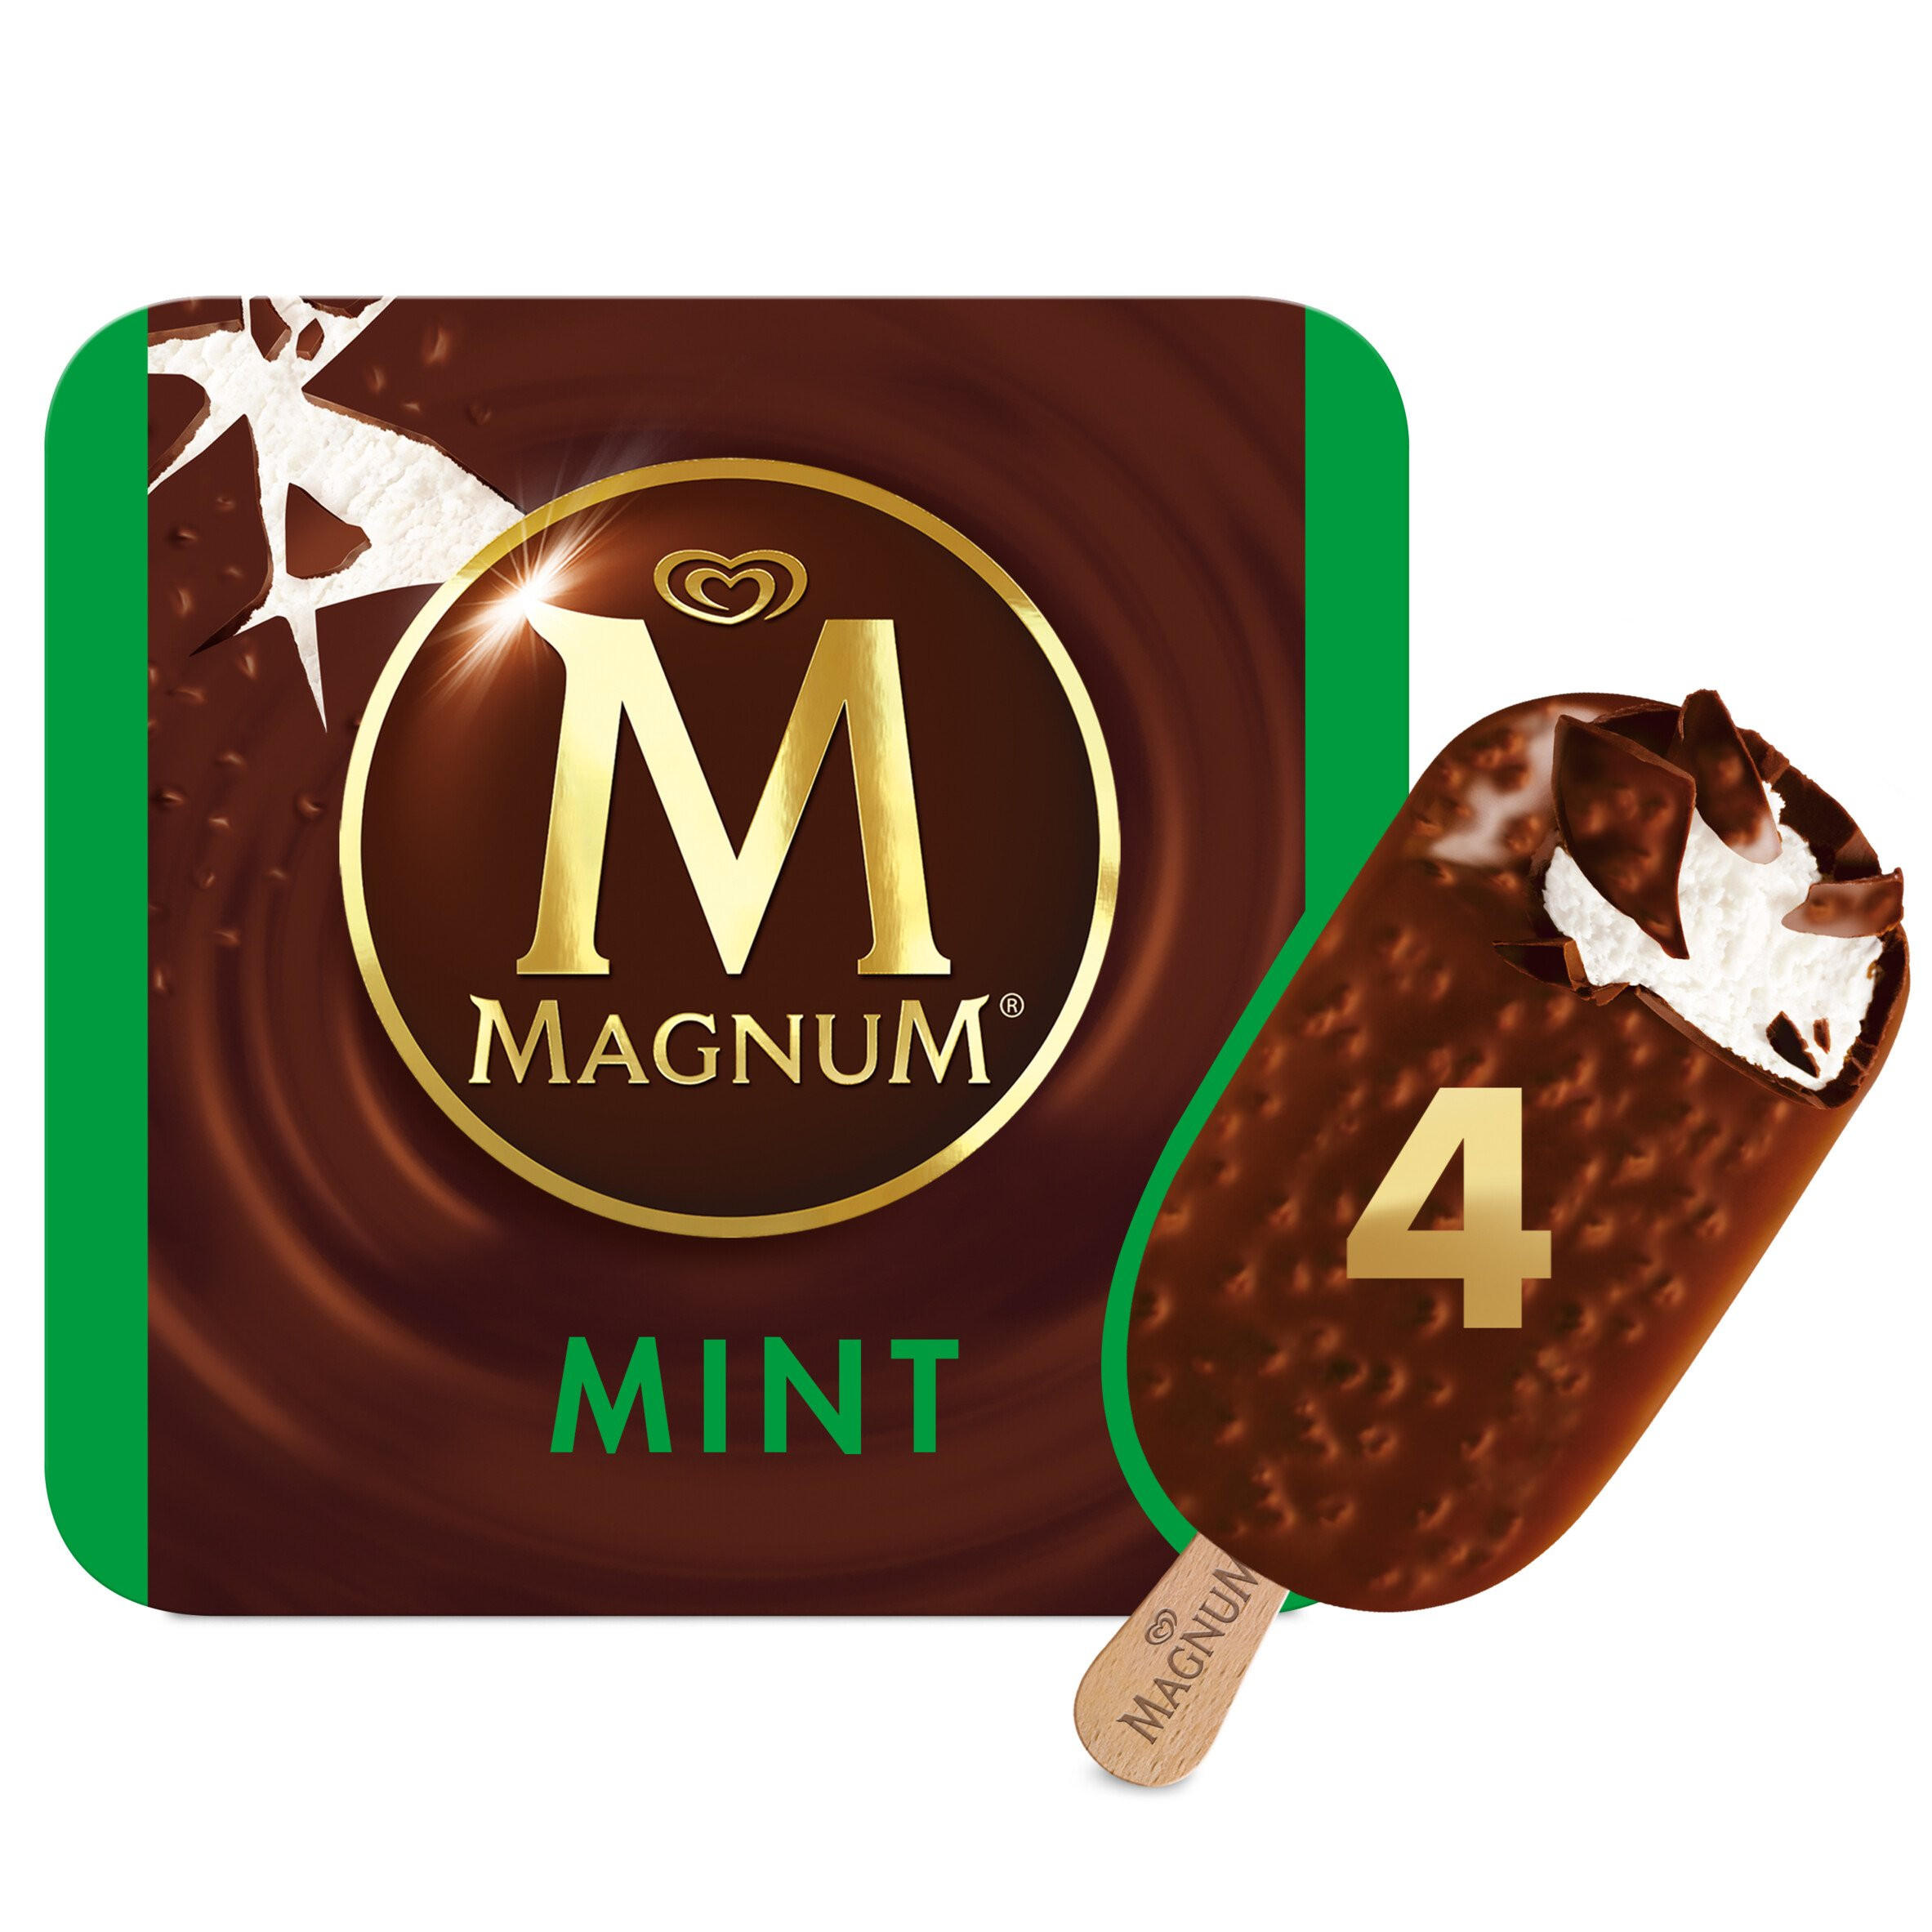 Magnum Mint Ice Cream 4 x 100 ml | Ice Cream Cones, Sticks & Bars ...